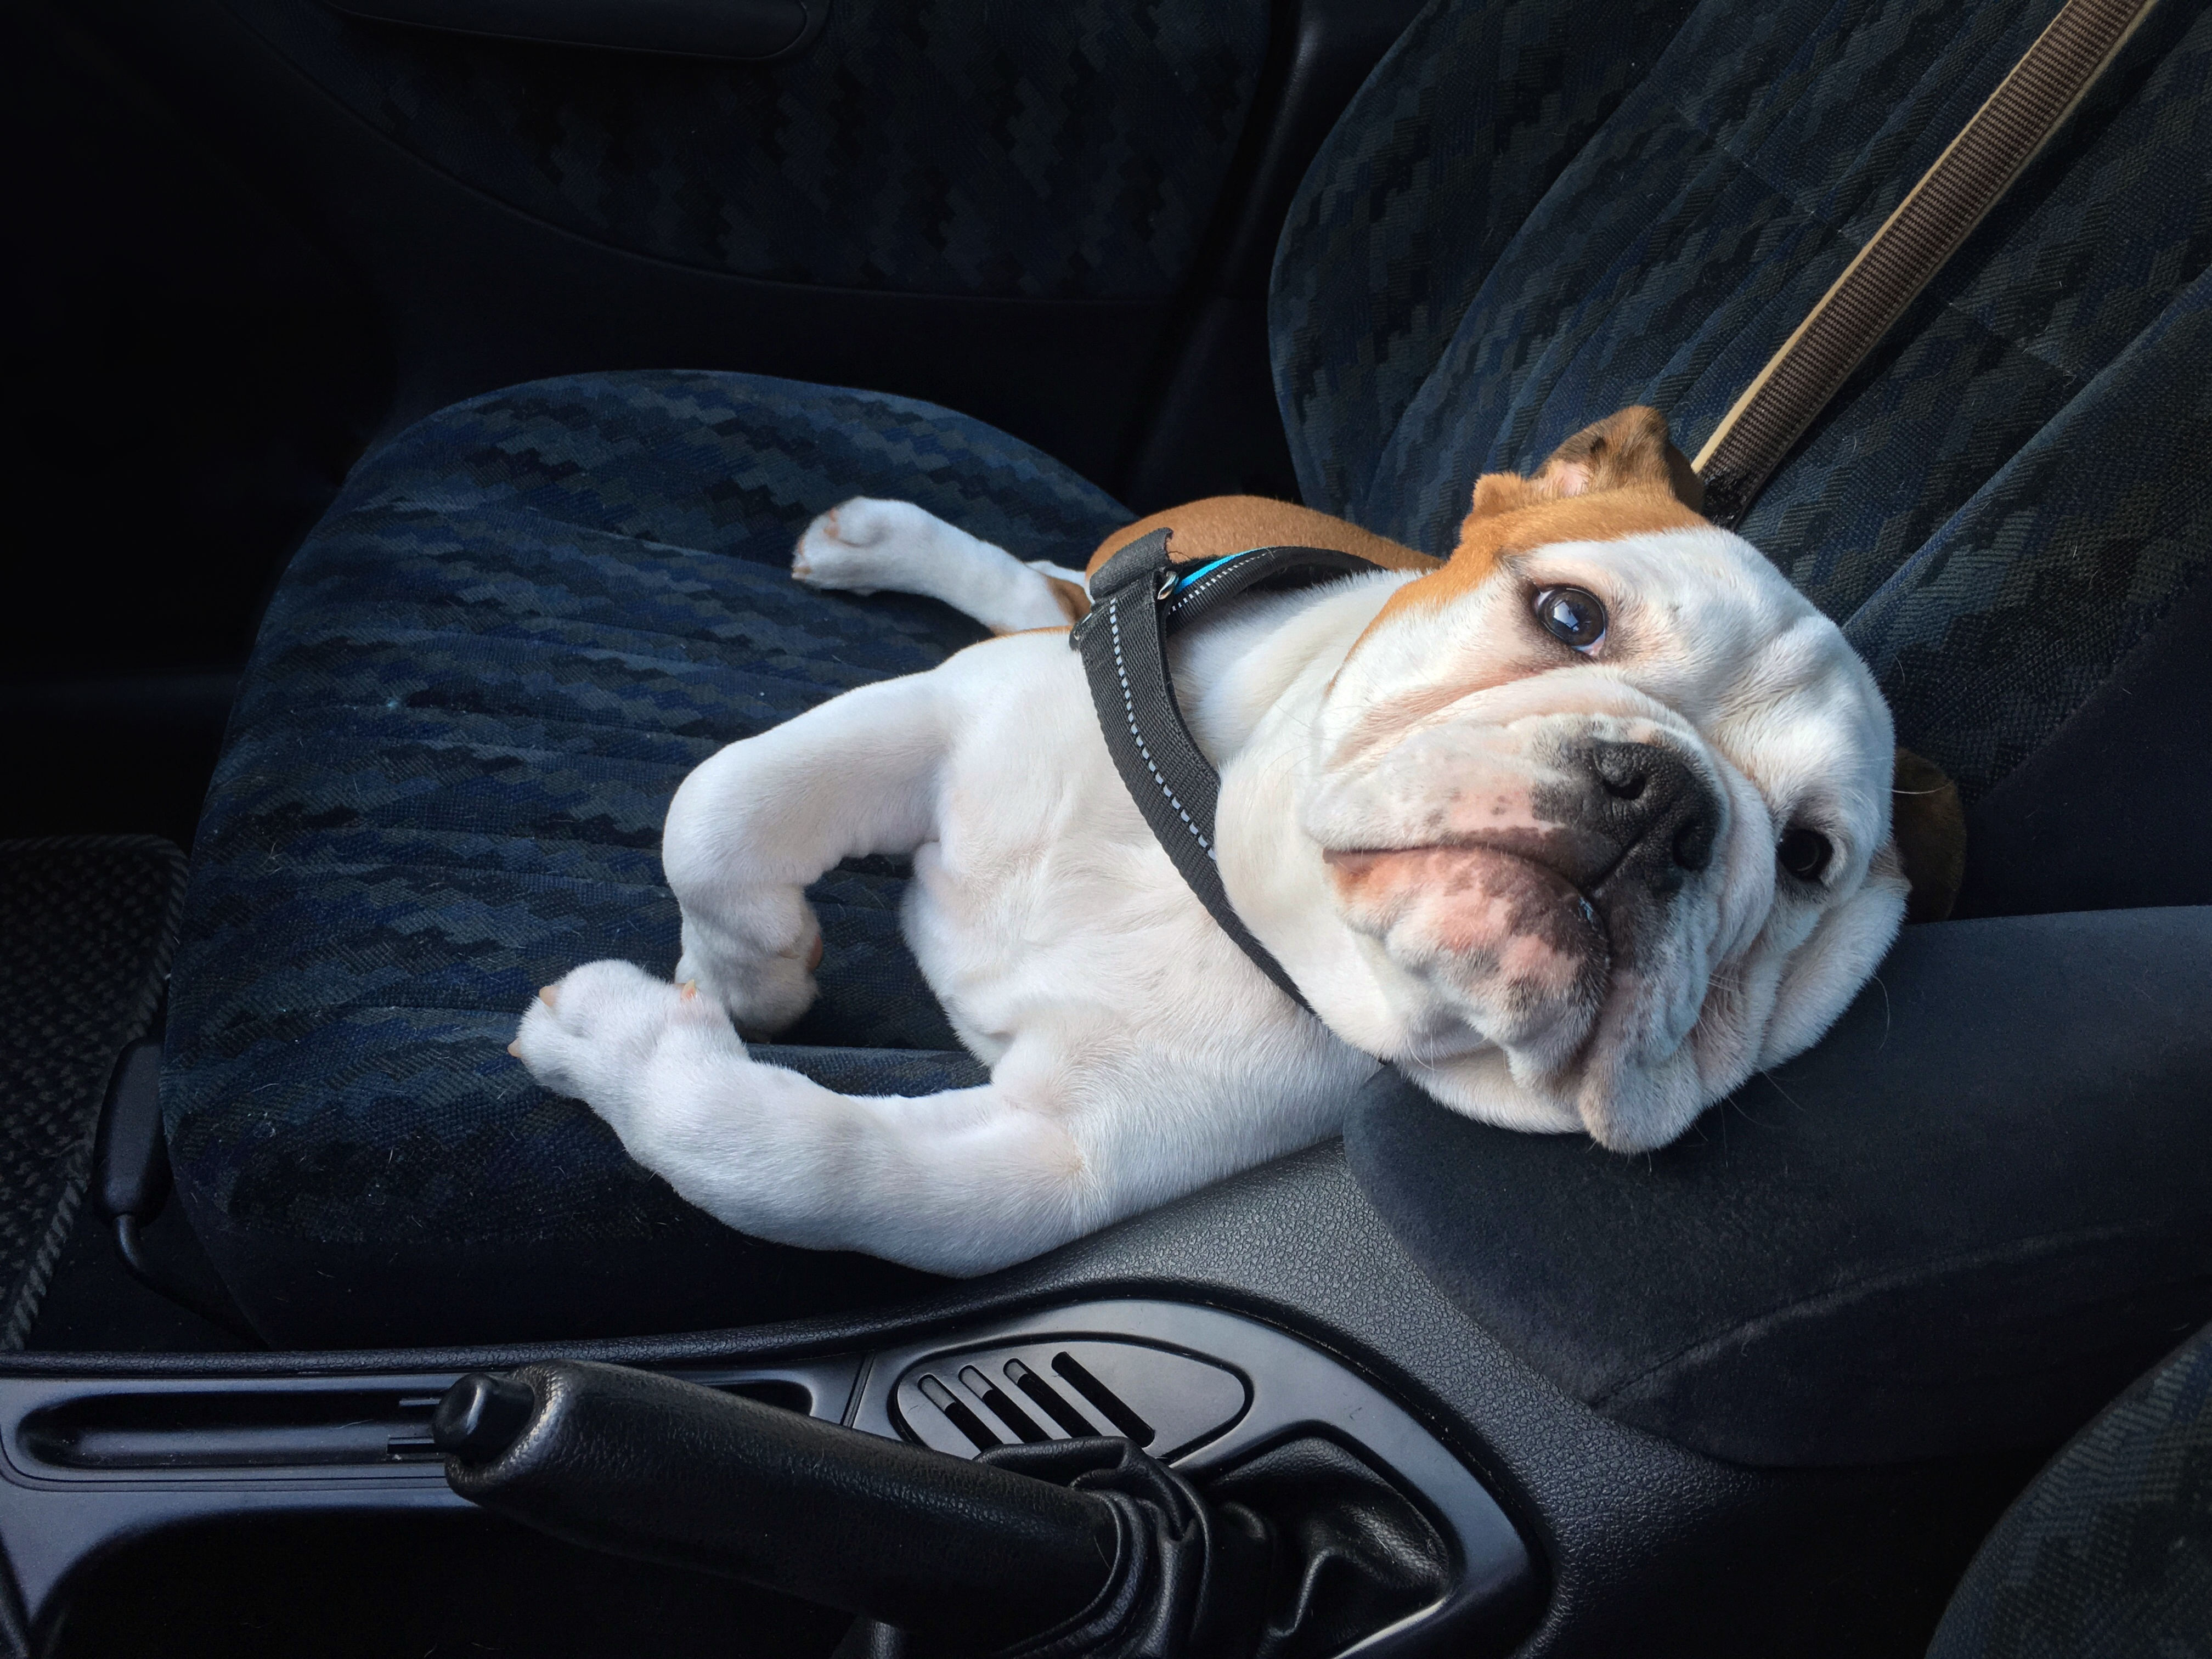 bulldog as a funny comfortable car passenger